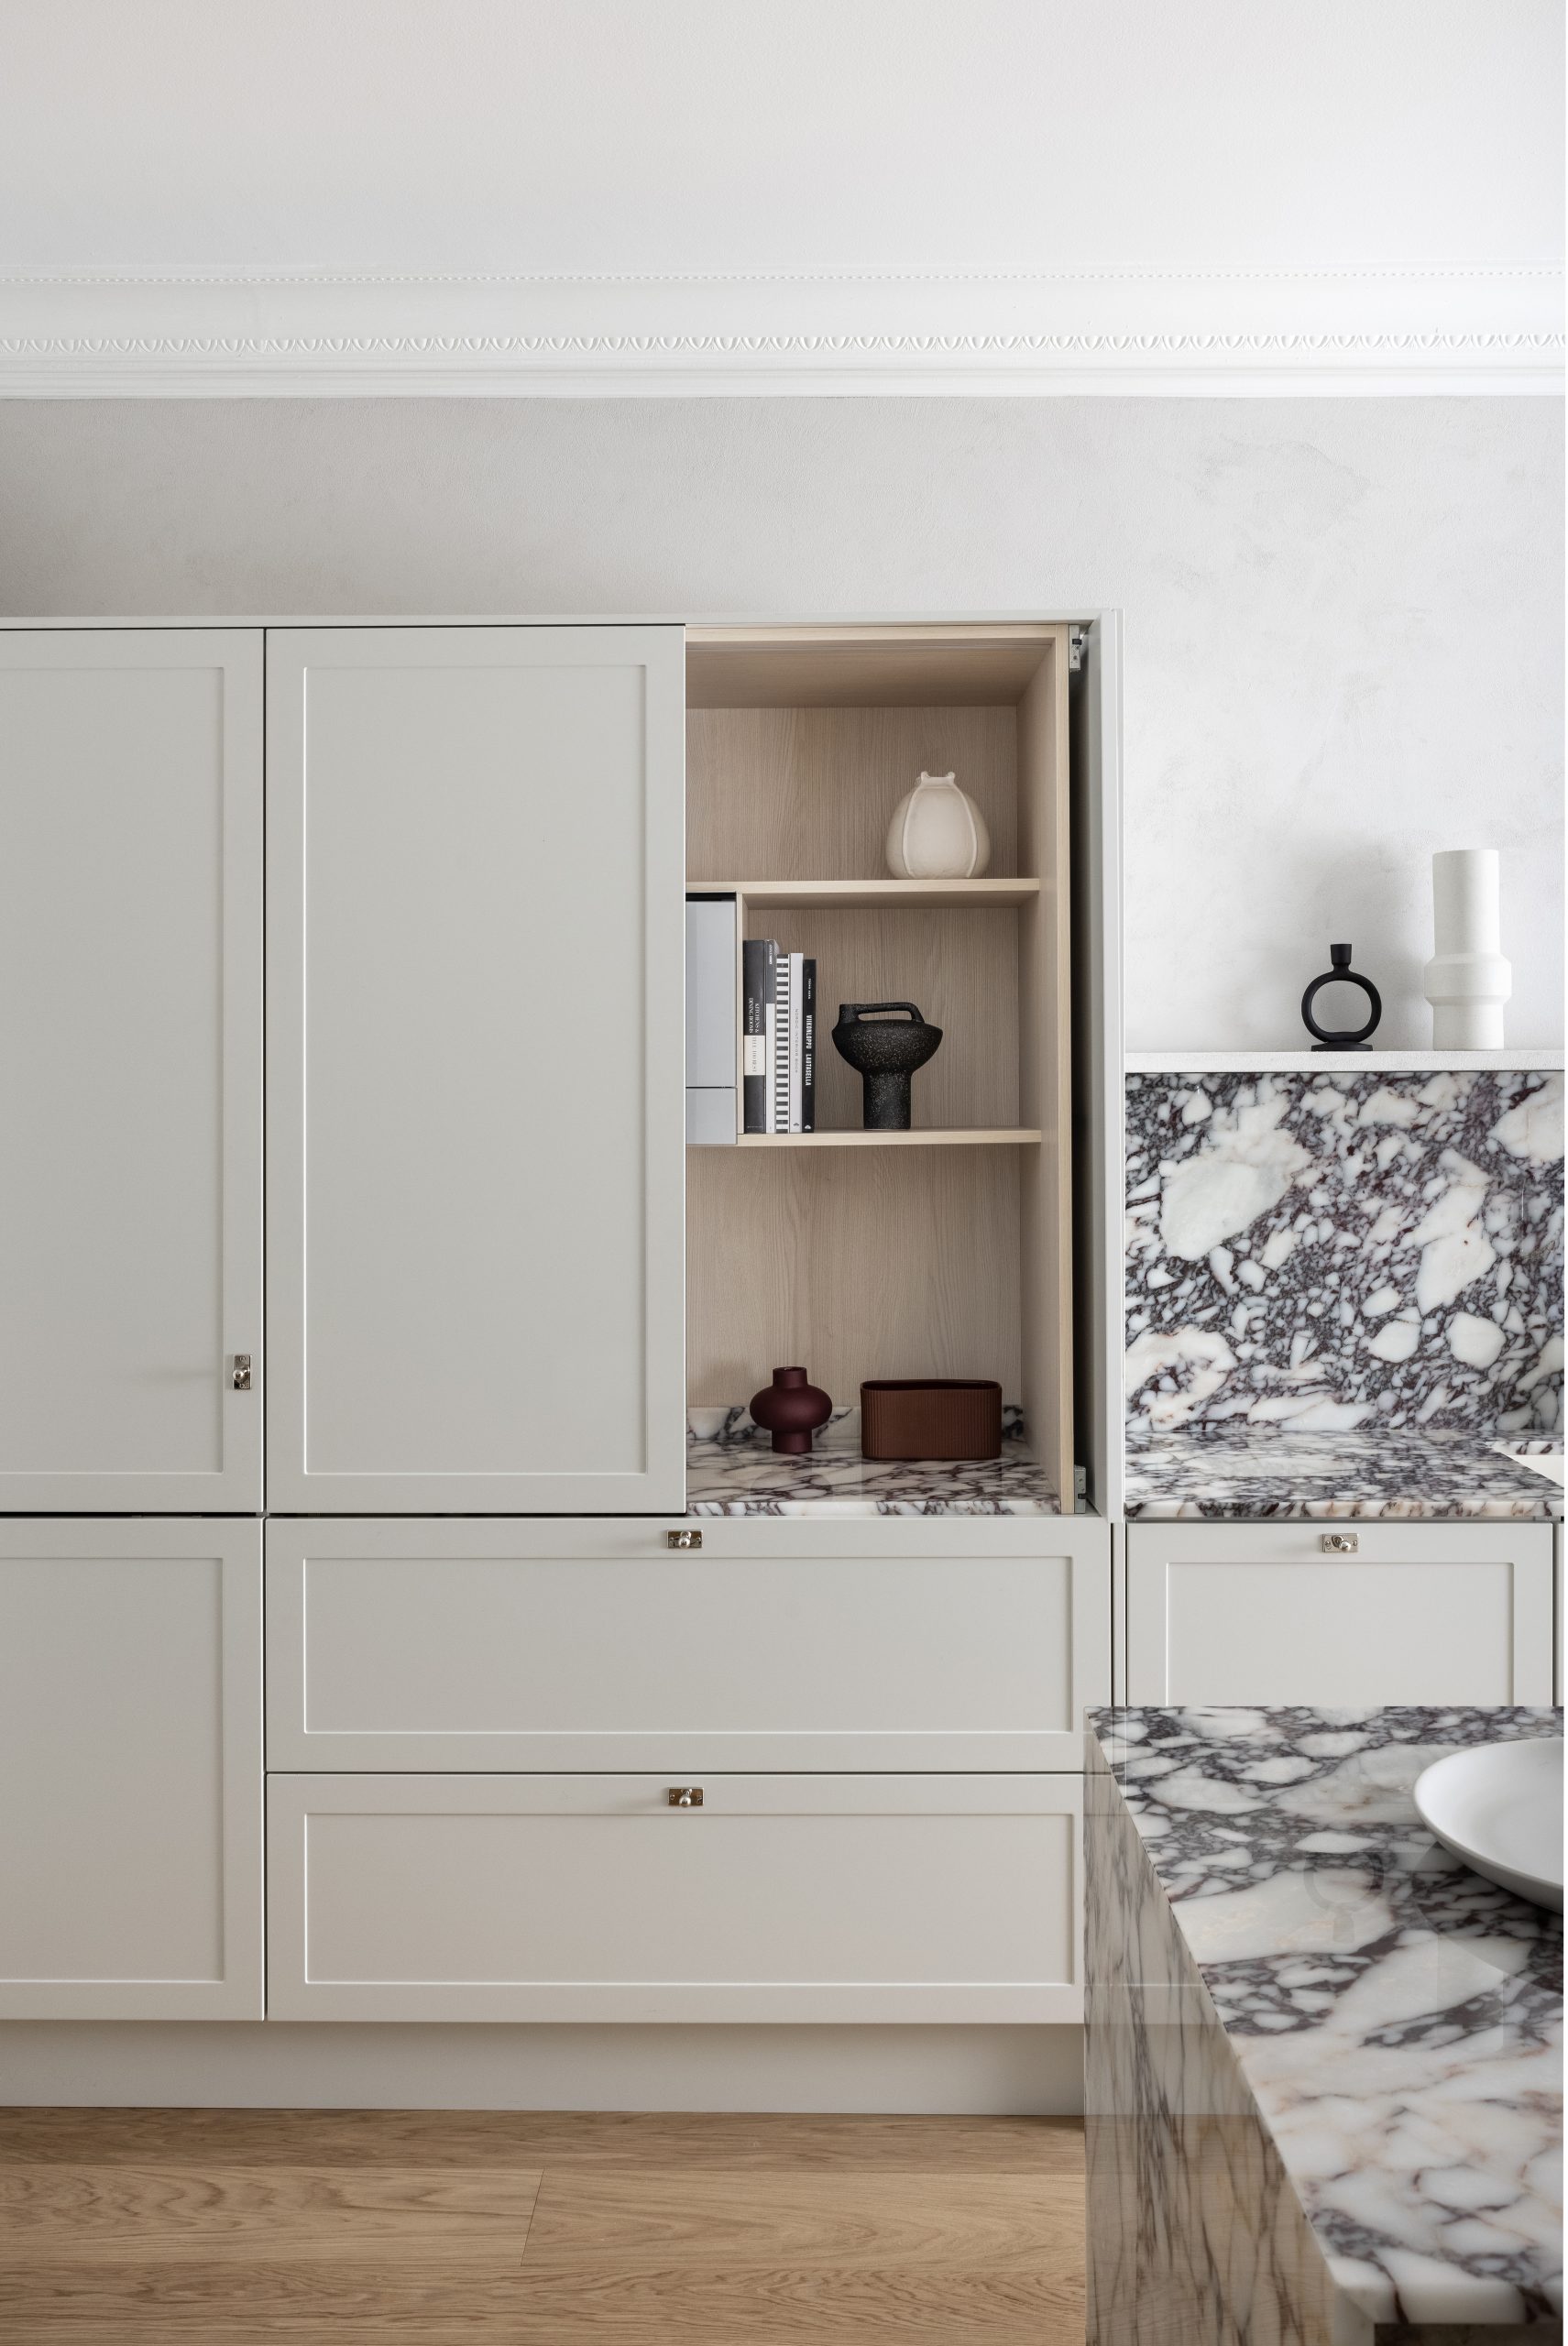 Blaun Helsingin Töölössä sijaitsevan keittiömyymälän esittely keittiö Calacatta Viola marmorilla ja tammi aamiaskaapilla.